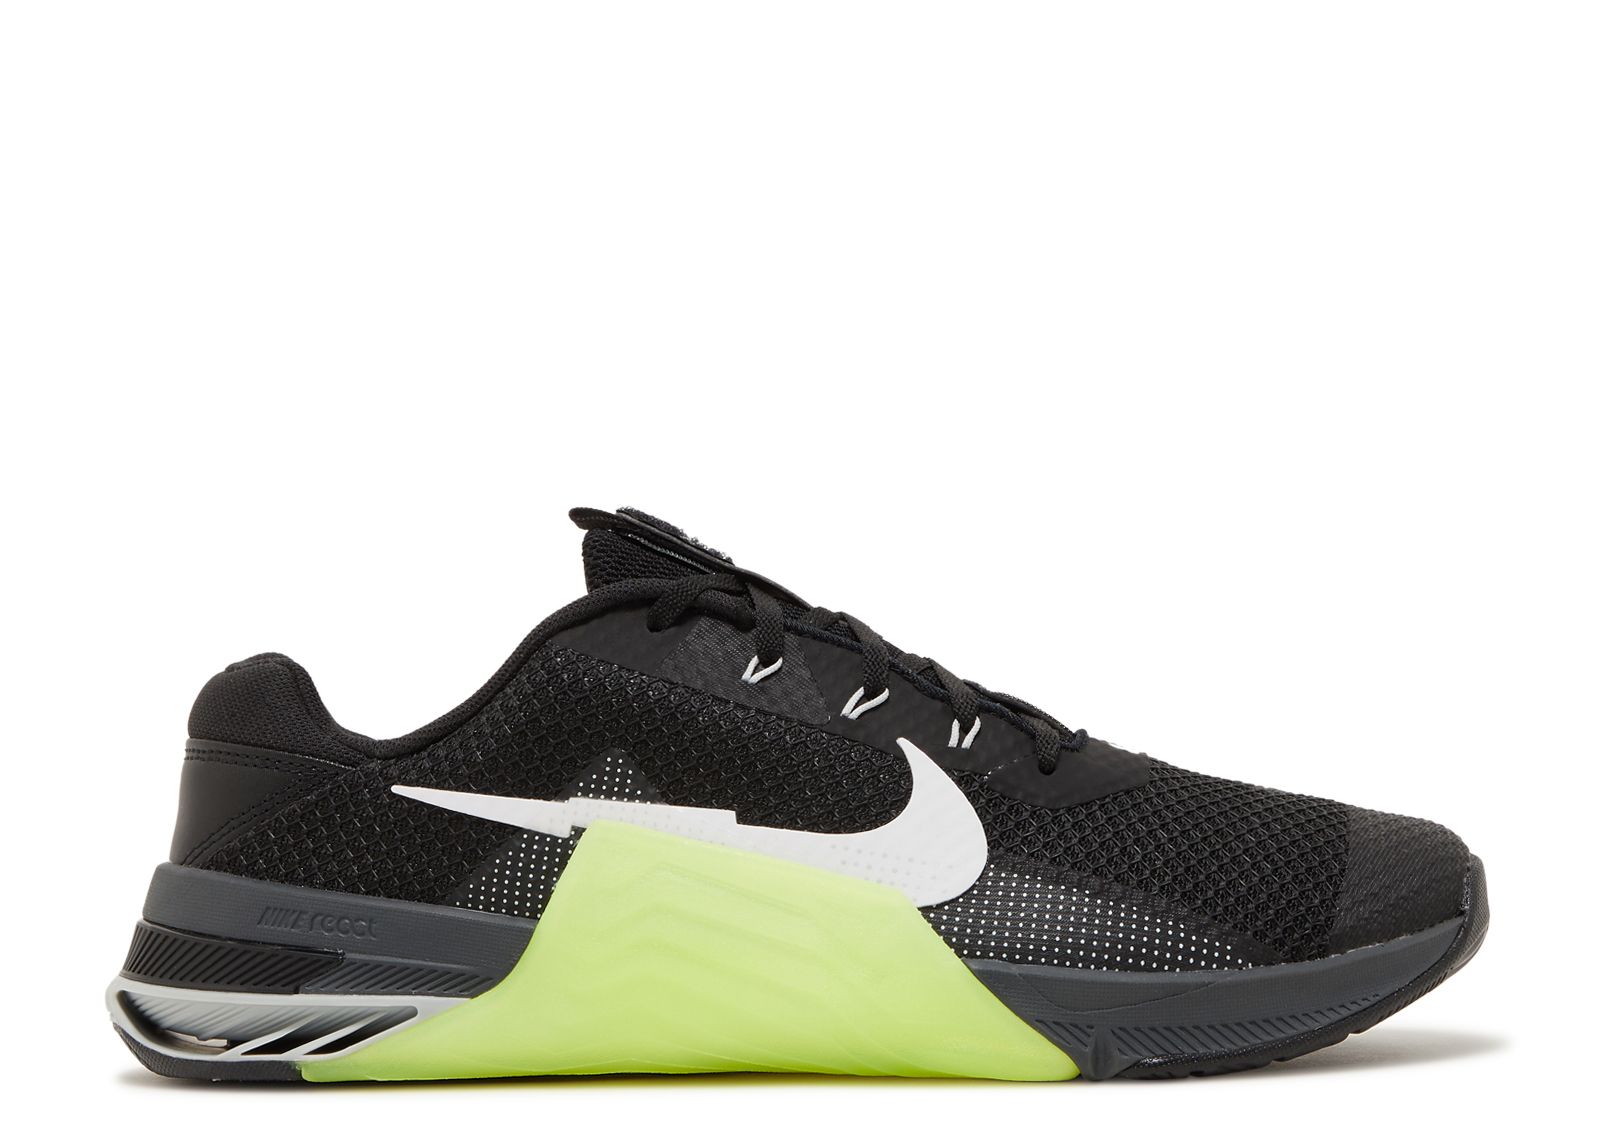 Metcon 7 Volt' Nike - CZ8281 017 - black/volt/iron grey/white | Club